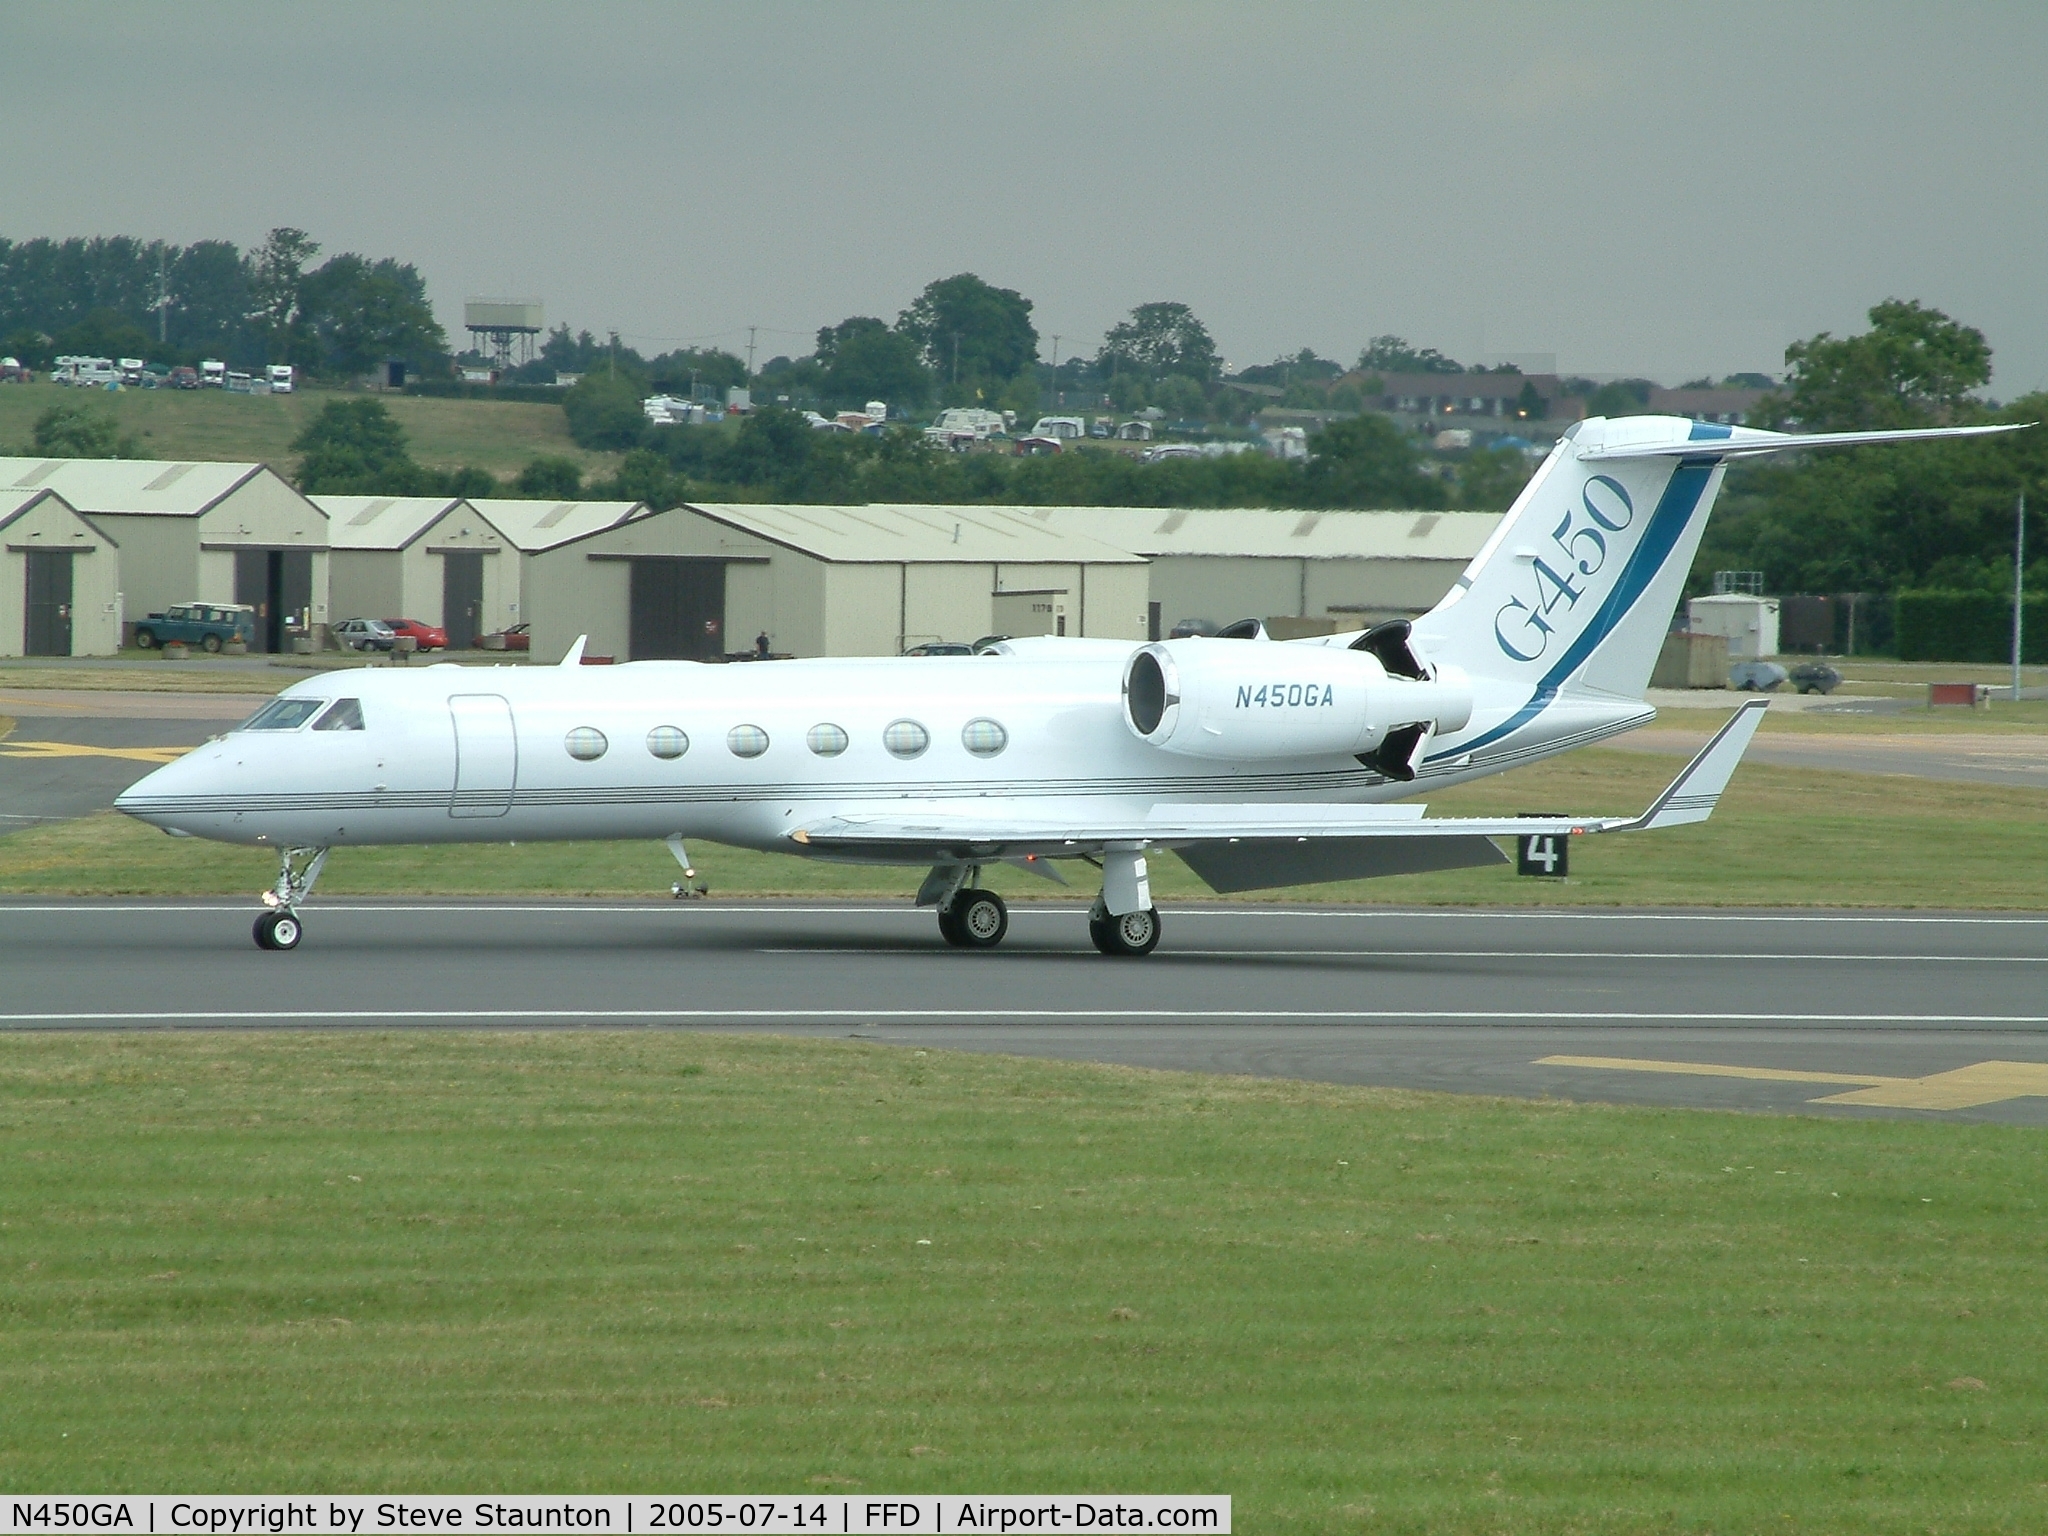 N450GA, 2004 Gulfstream Aerospace GIV-X (G450) C/N 4004, Royal International Air Tattoo 2005